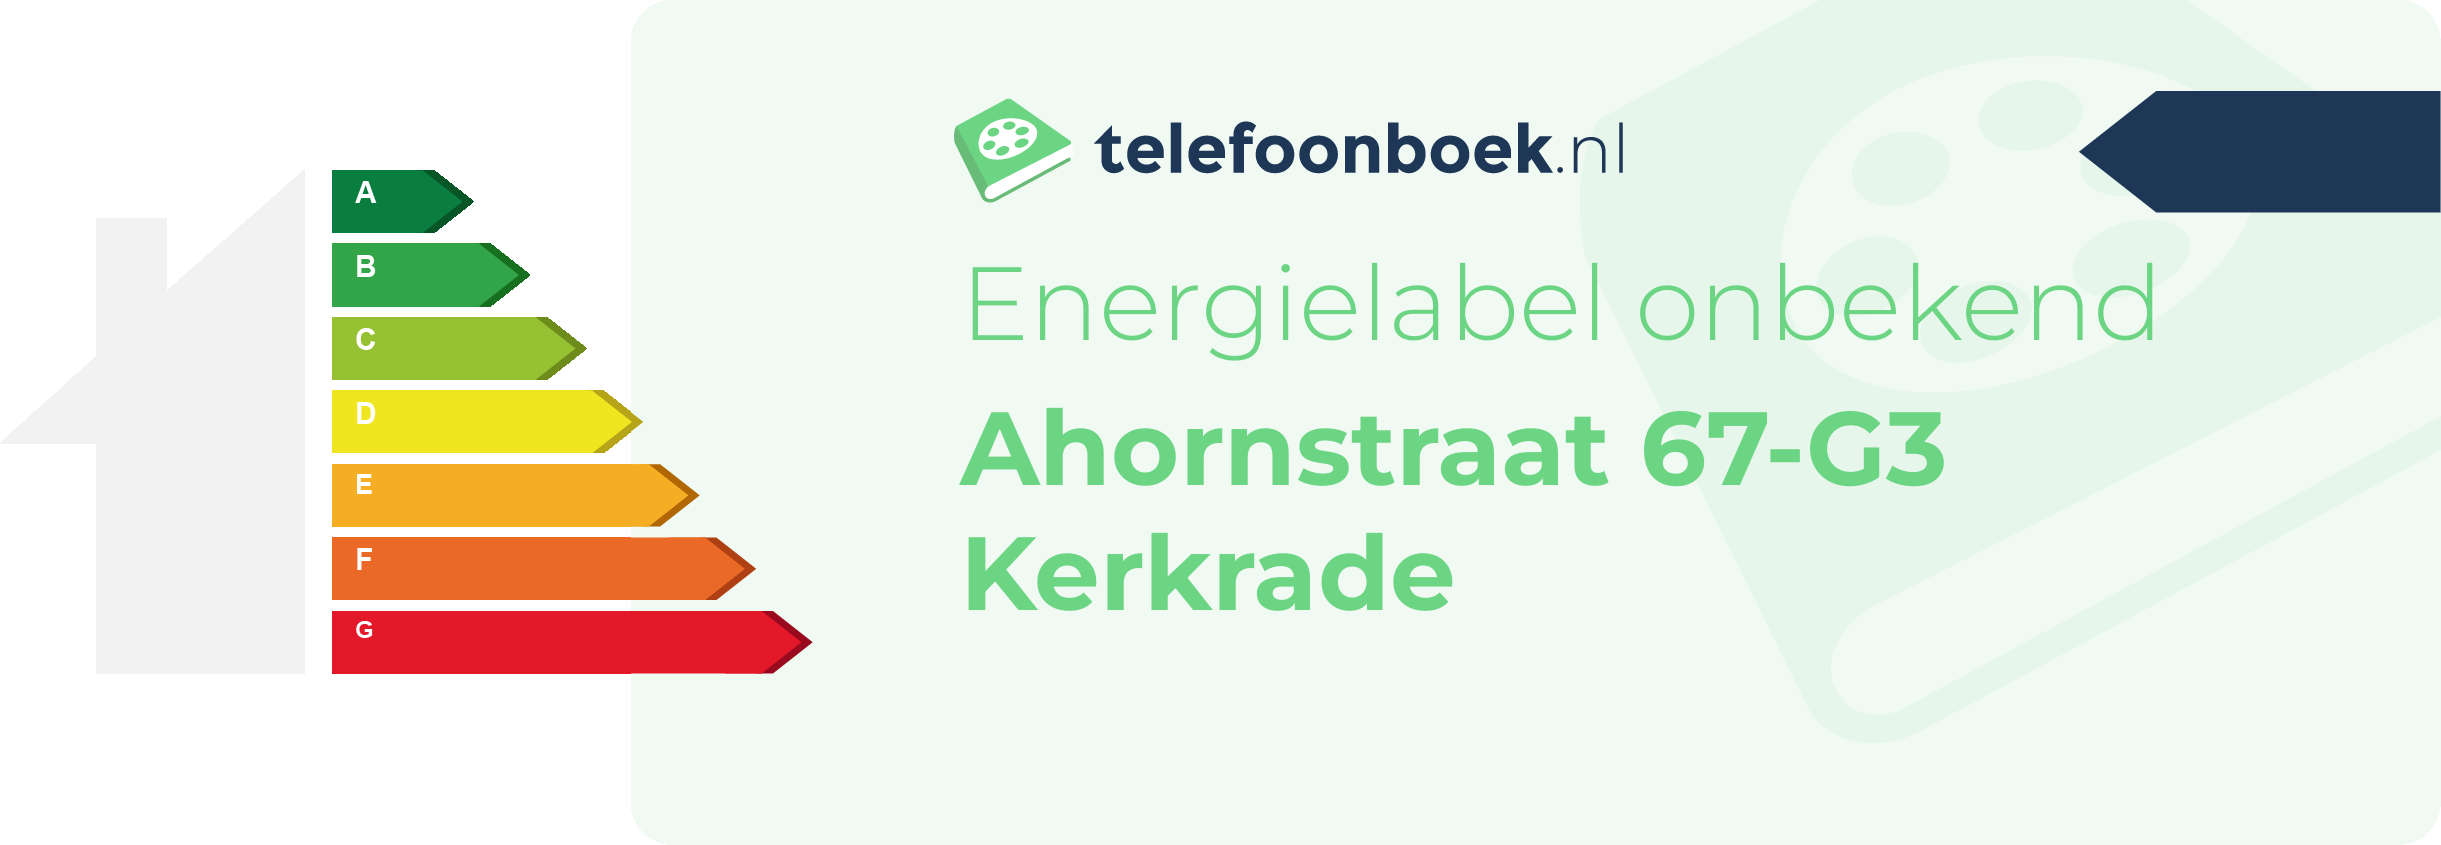 Energielabel Ahornstraat 67-G3 Kerkrade